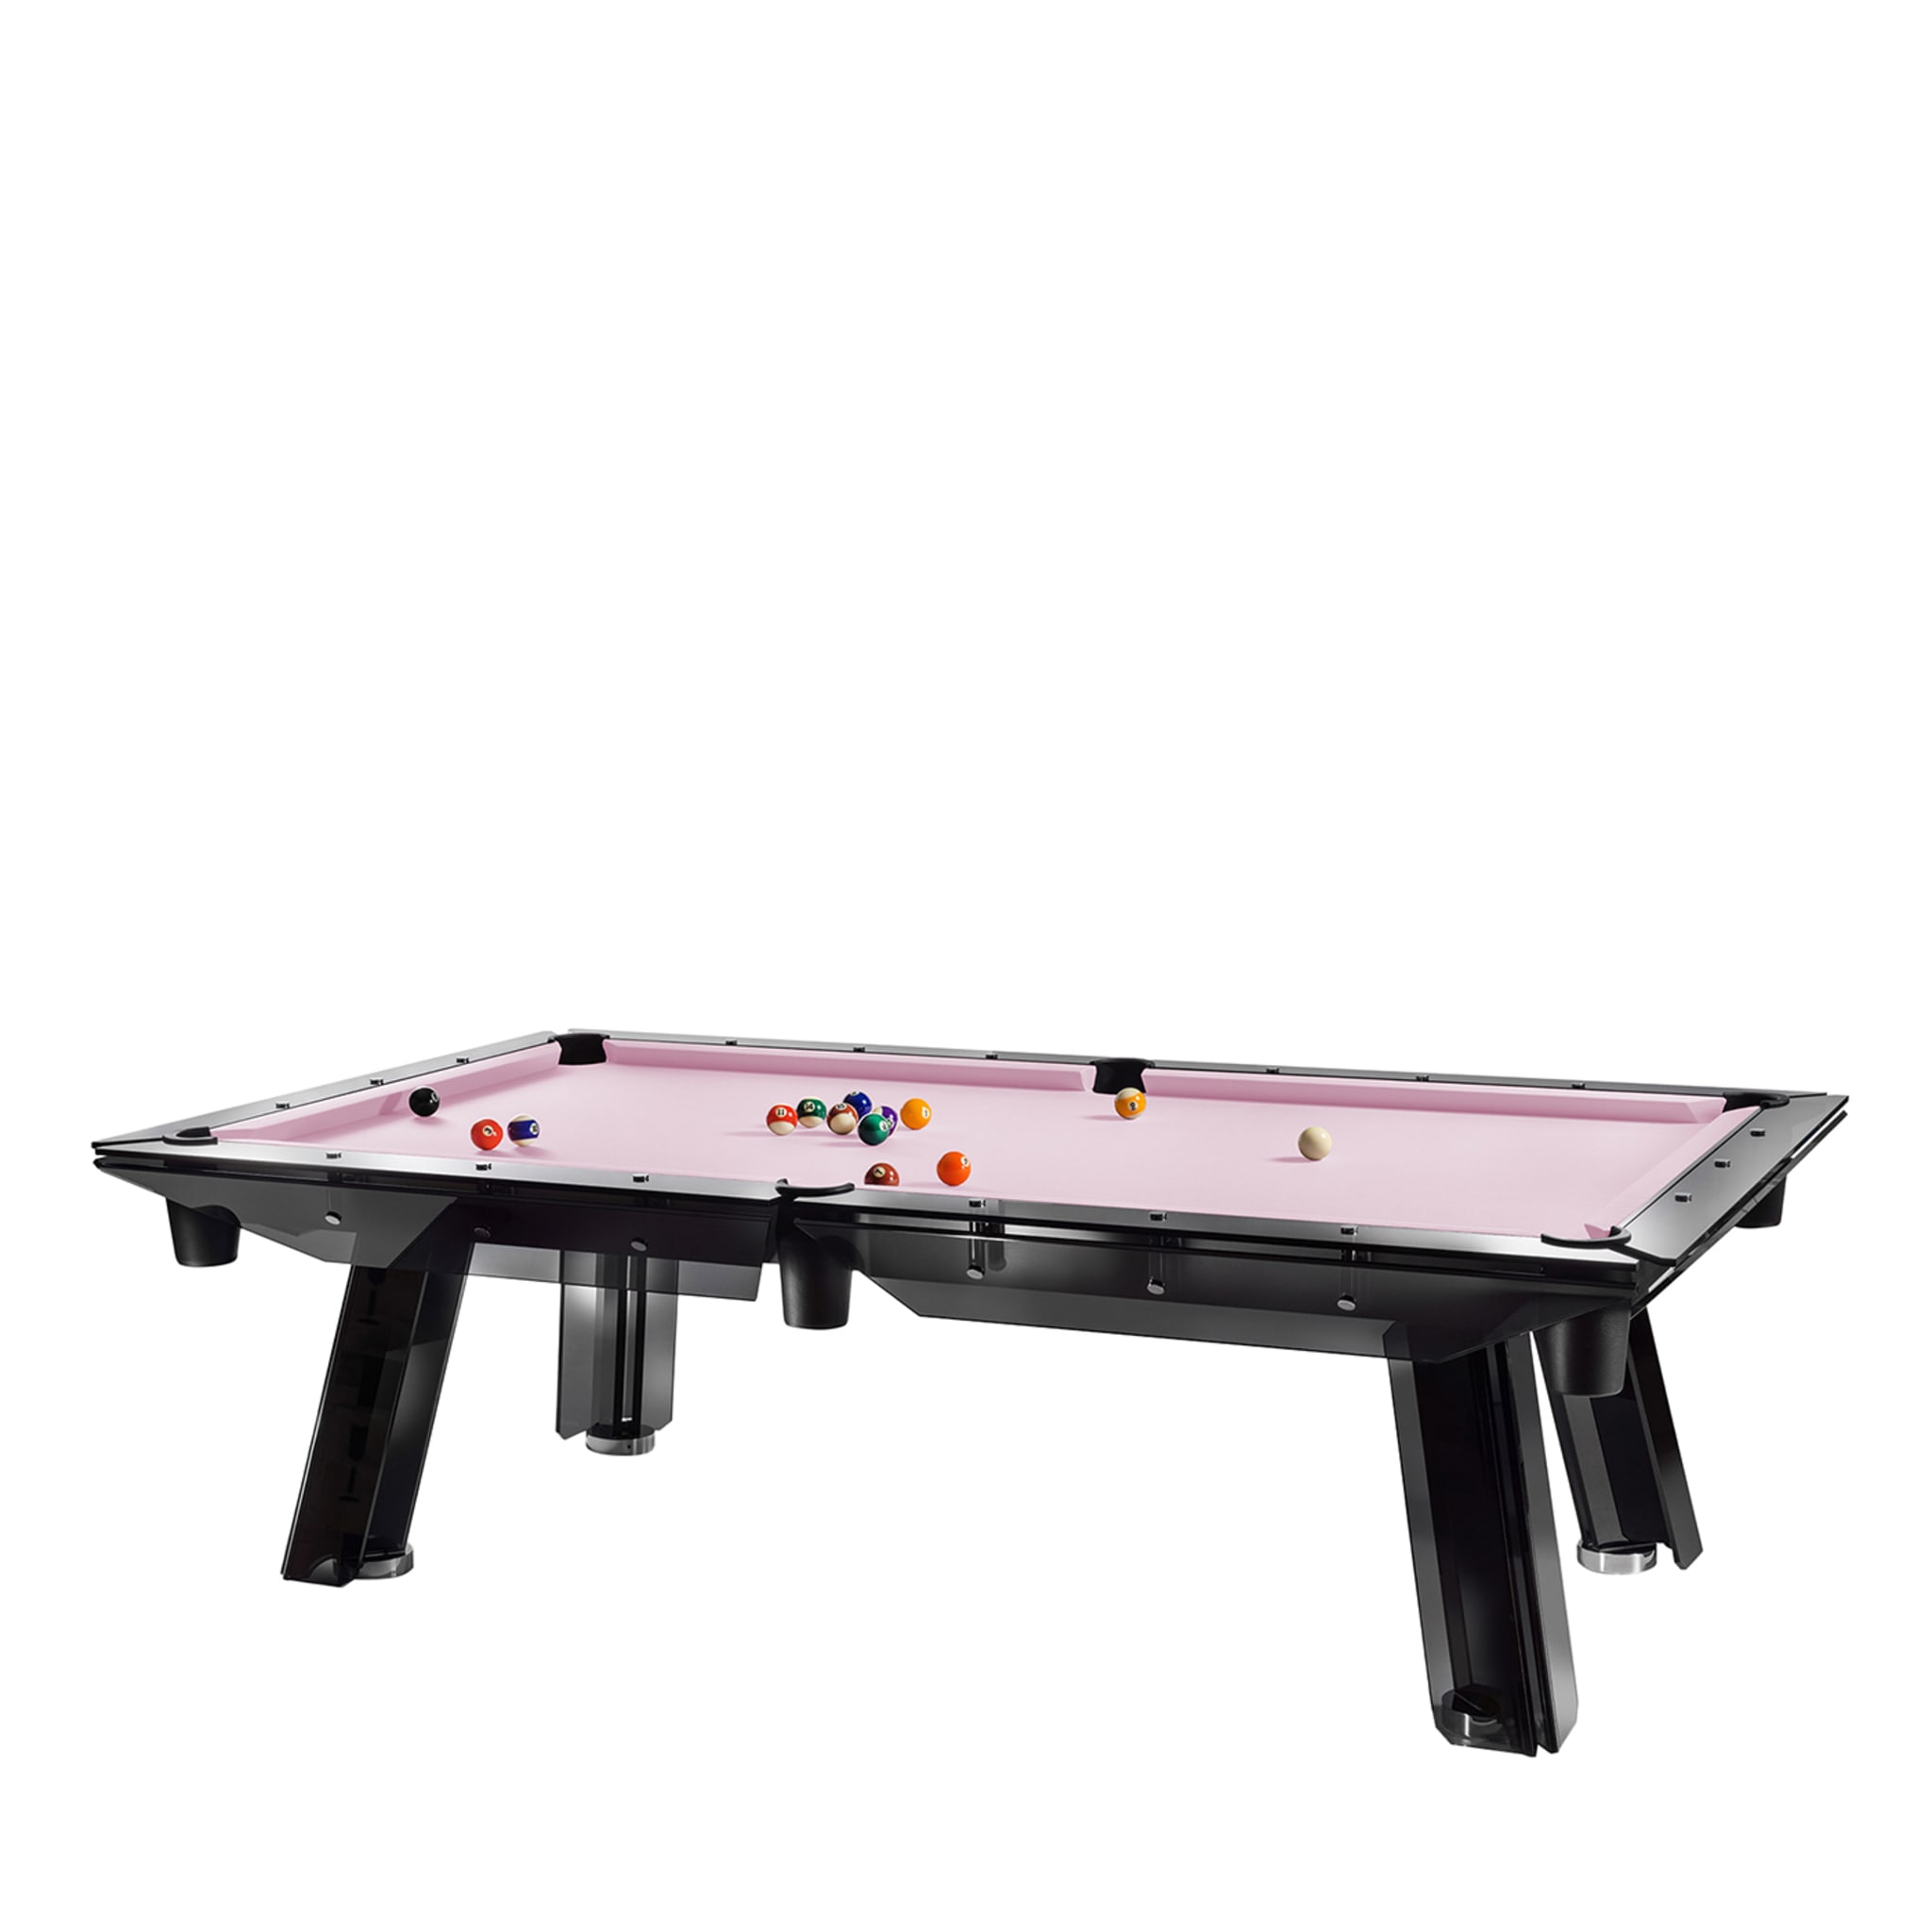 Filotto All Black Billiards Table - Main view